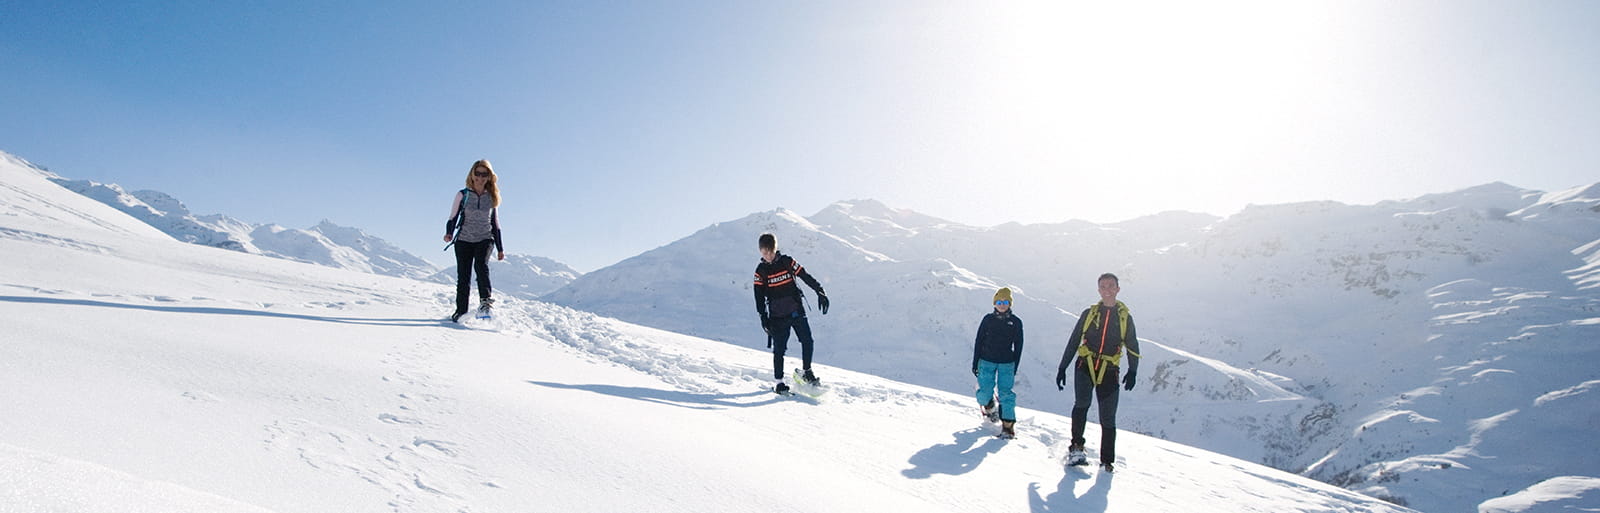 Wie kann man einen schönen Urlaub in den Bergen verbringen, ohne Ski zu fahren?